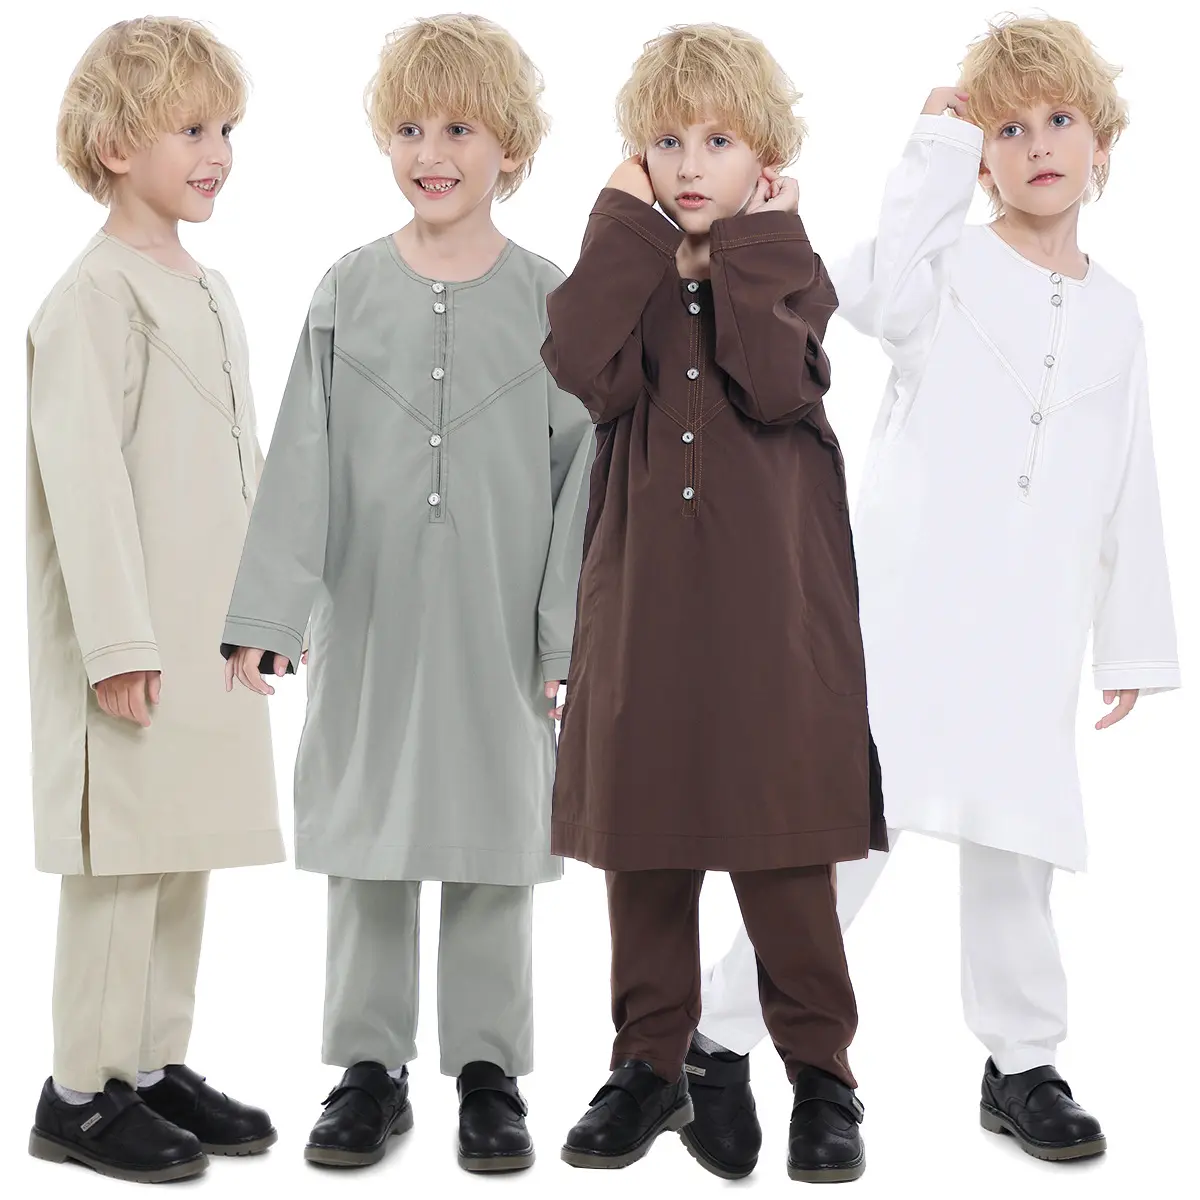 Großhandel Hochwertige arabische Kinder Kaftan Muslim Islamische Kinder Kleidung Thobe Jugend Jungen Abaya Robe Anzug